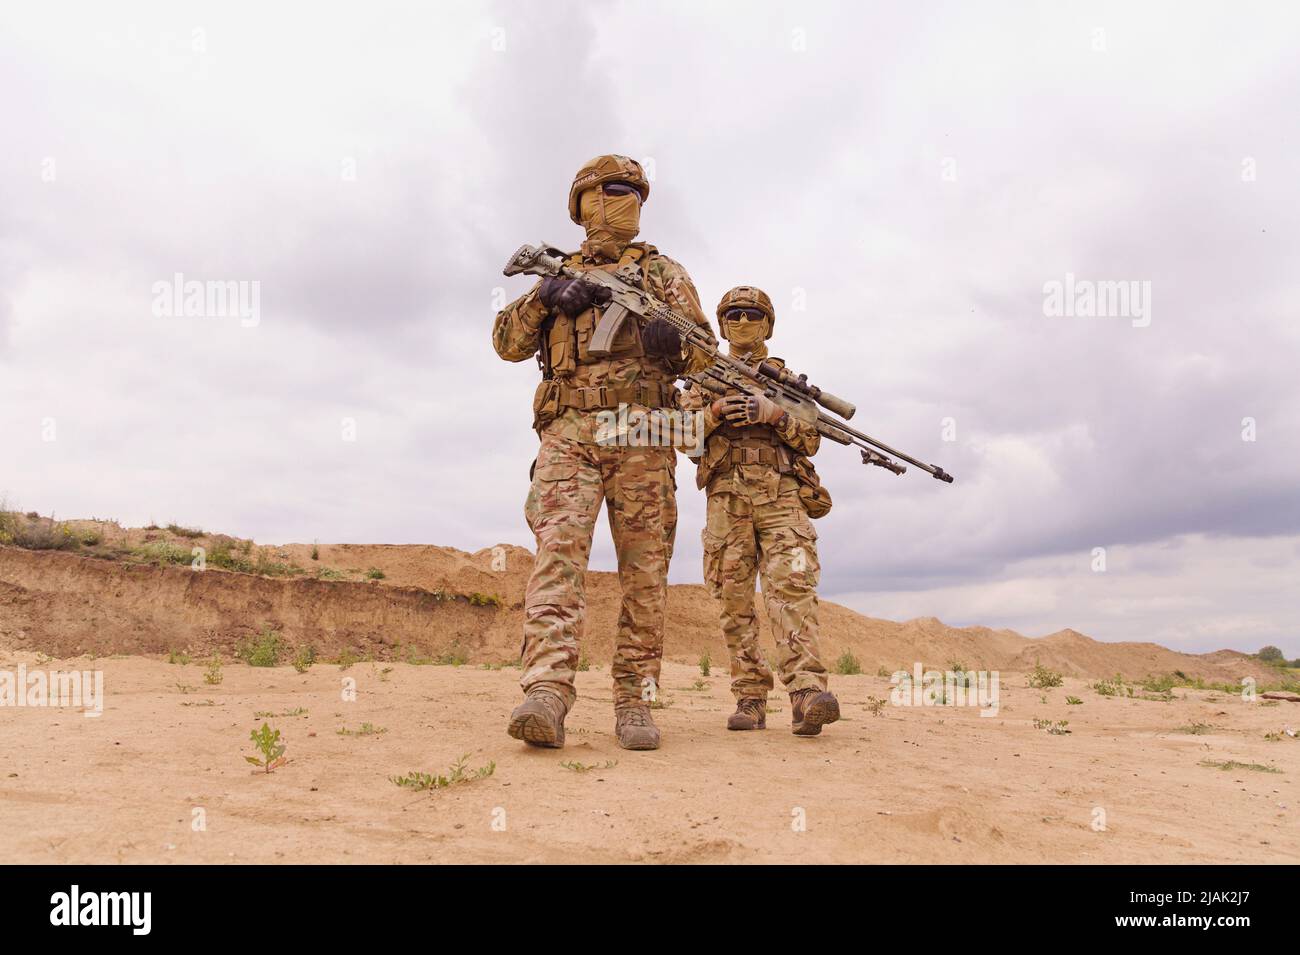 Deux Rangers des forces spéciales au cours d'une opération militaire dans le désert. Banque D'Images